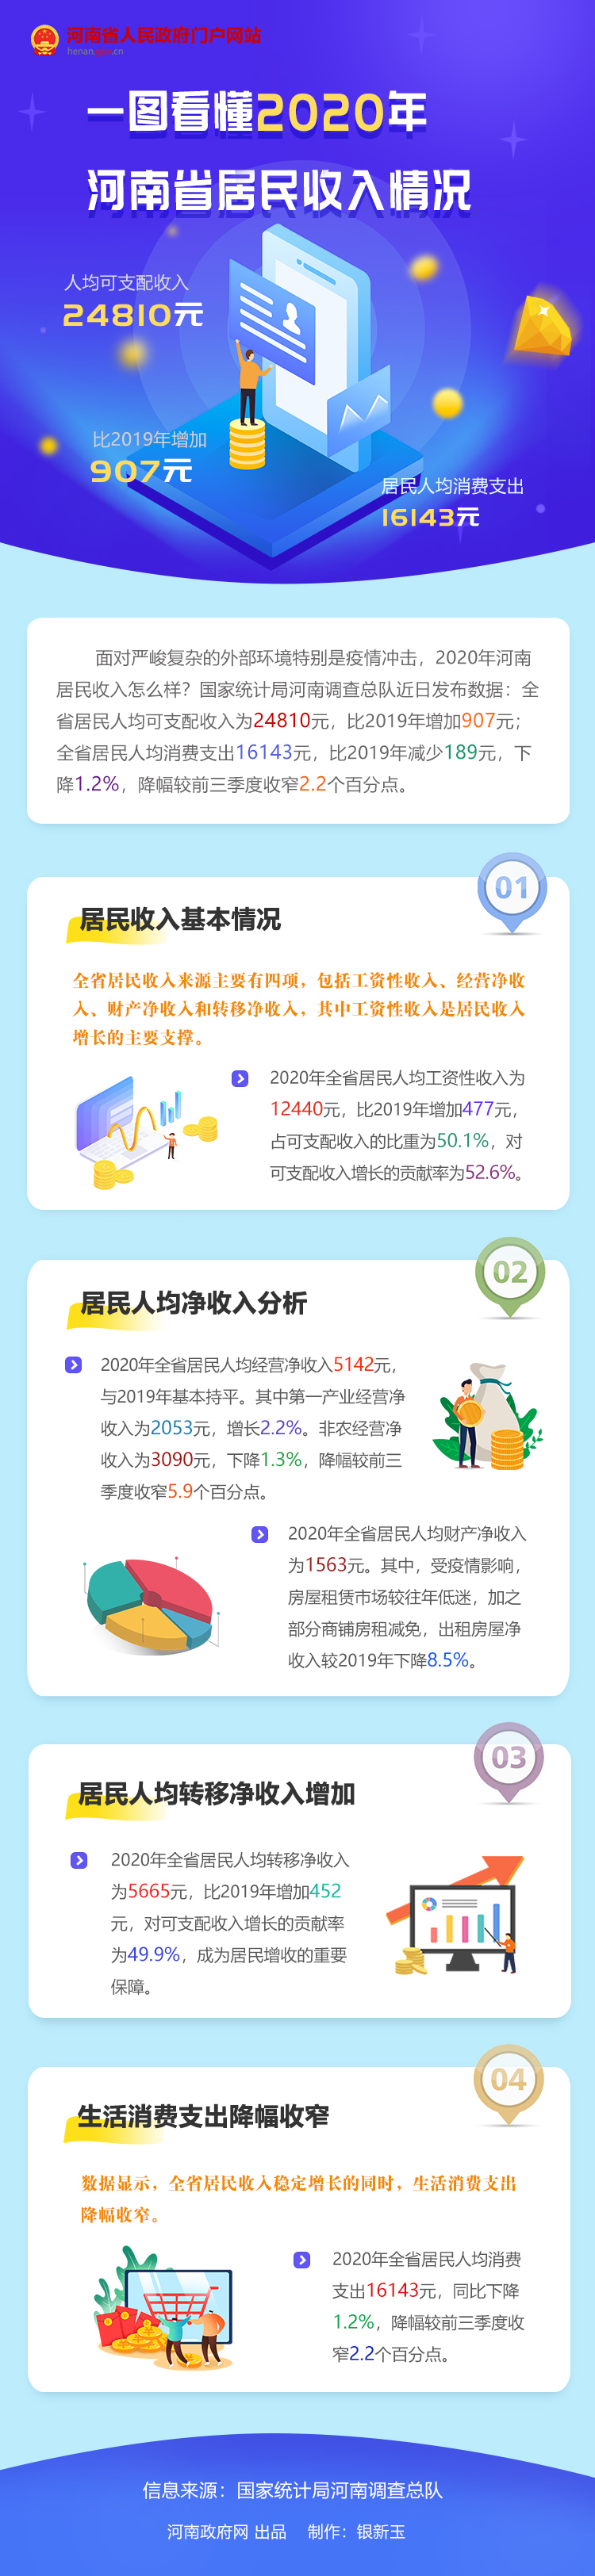 一图看懂 | 2020年河南省居民收入情况